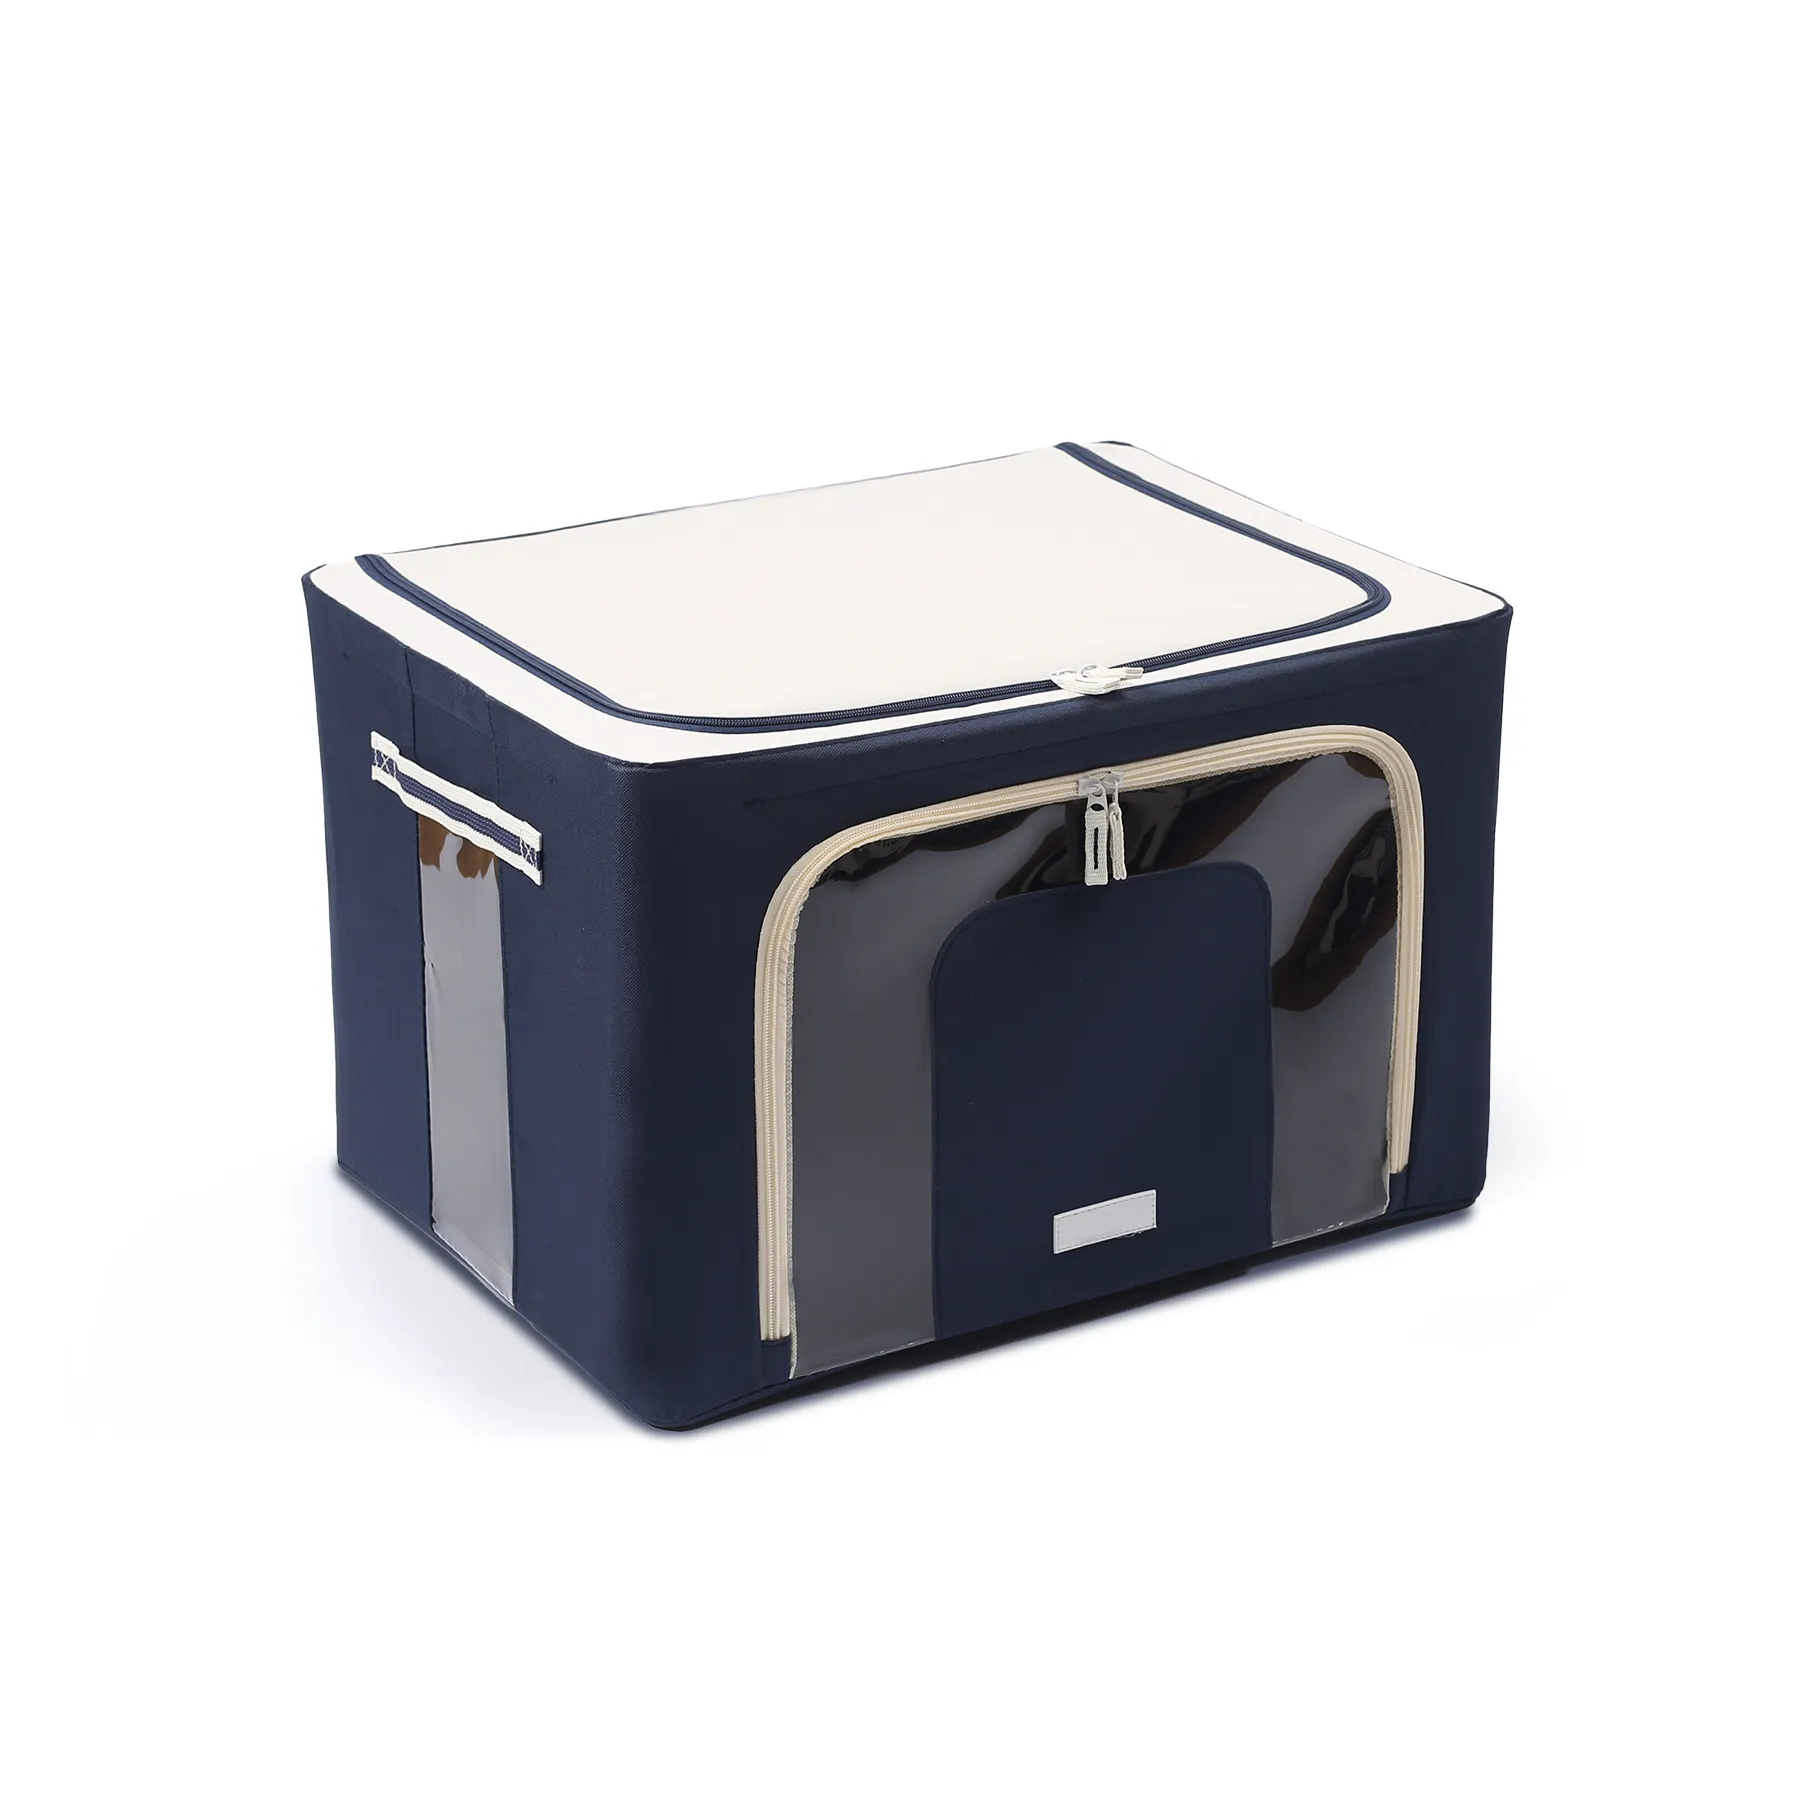 Тканевый высококачественный ящик для хранения из Оксфордской ткани по низкой цене, корзины для хранения, домашняя организация, товары для одежды и игрушек